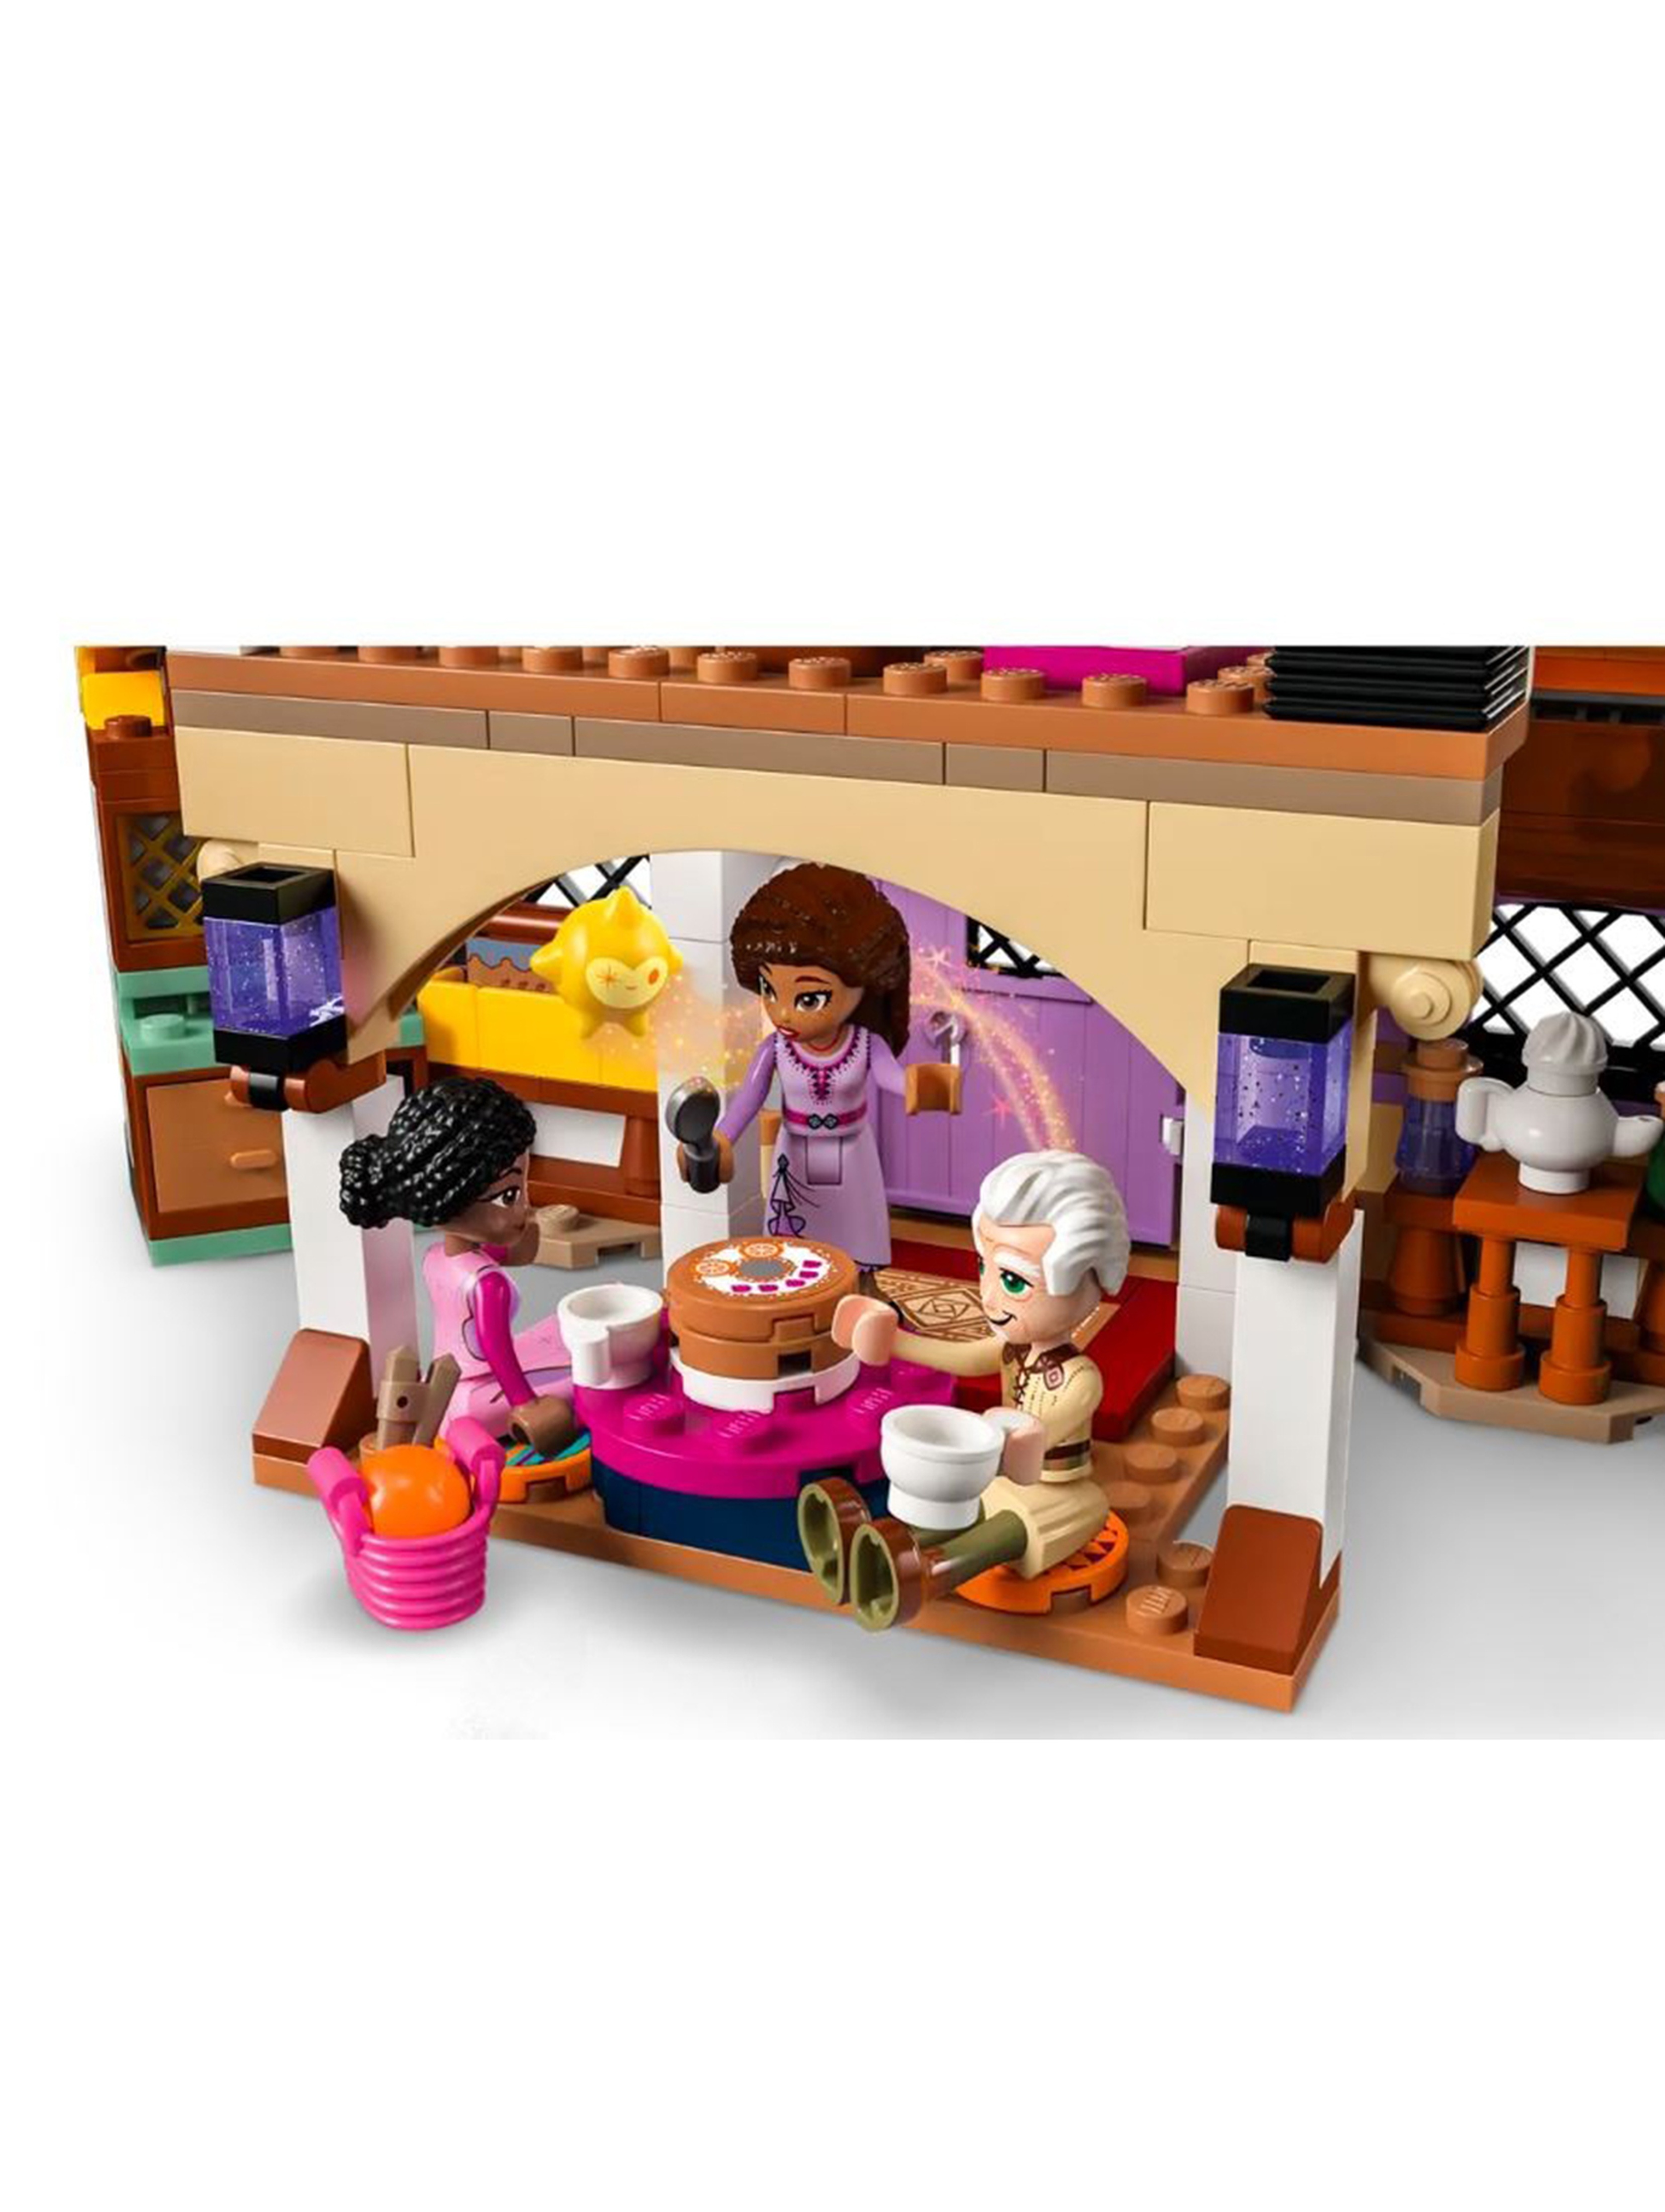 Klocki LEGO Disney Princess 43231 Chatka Ashy - 509 elementów, wiek 7 +